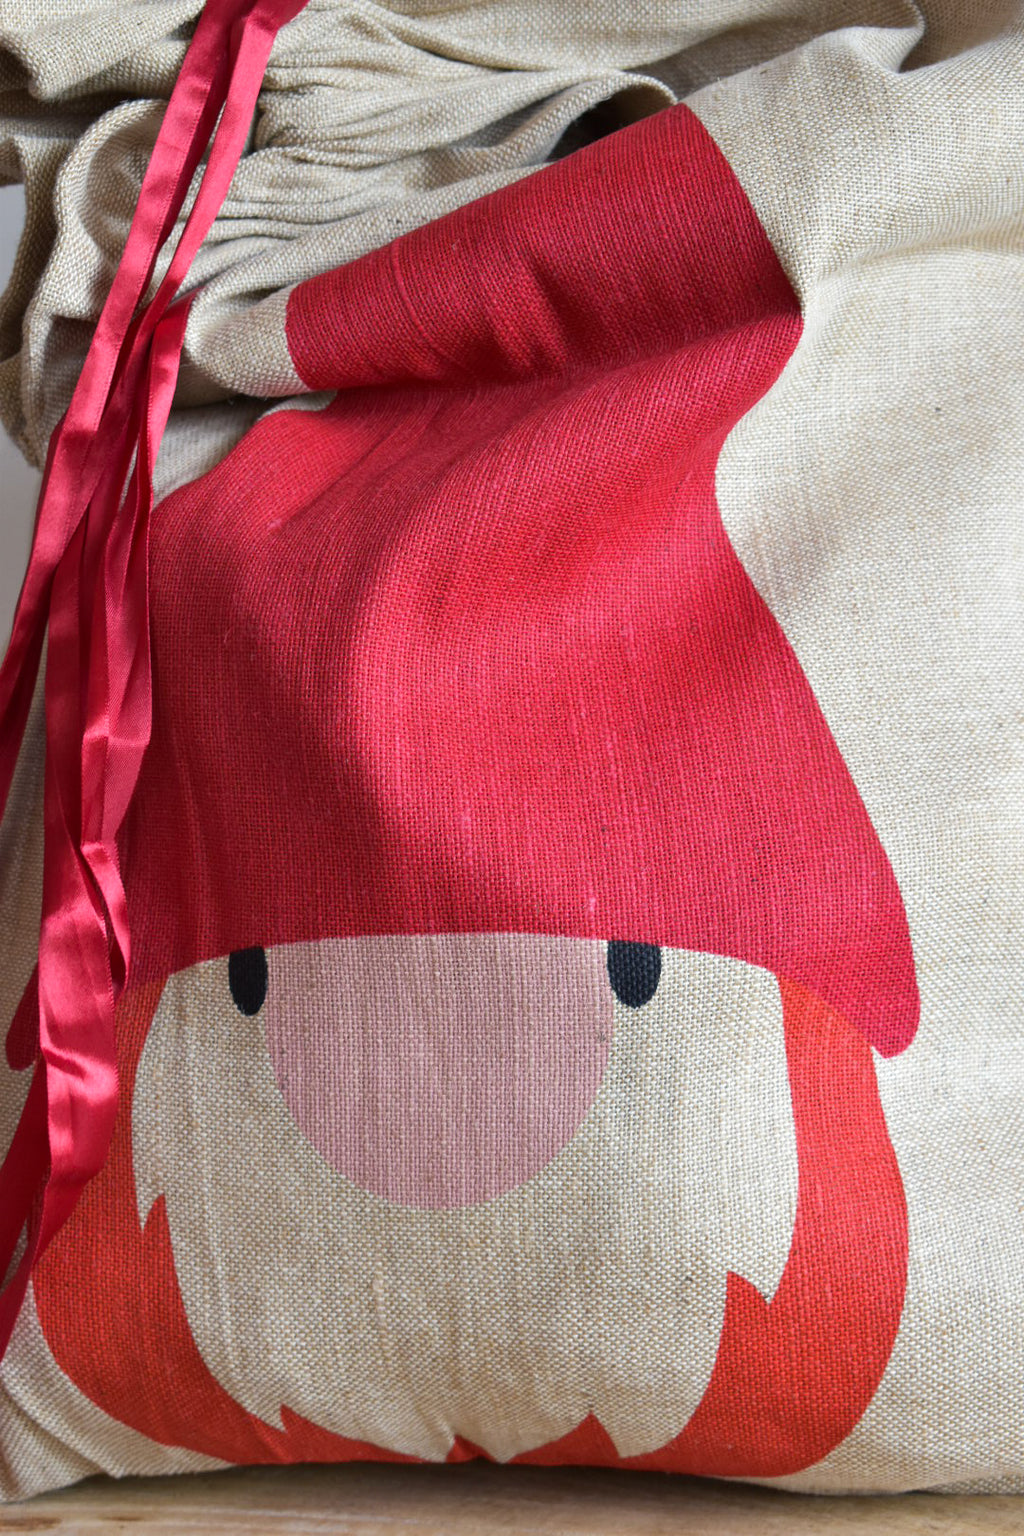 Santa Laundry bag